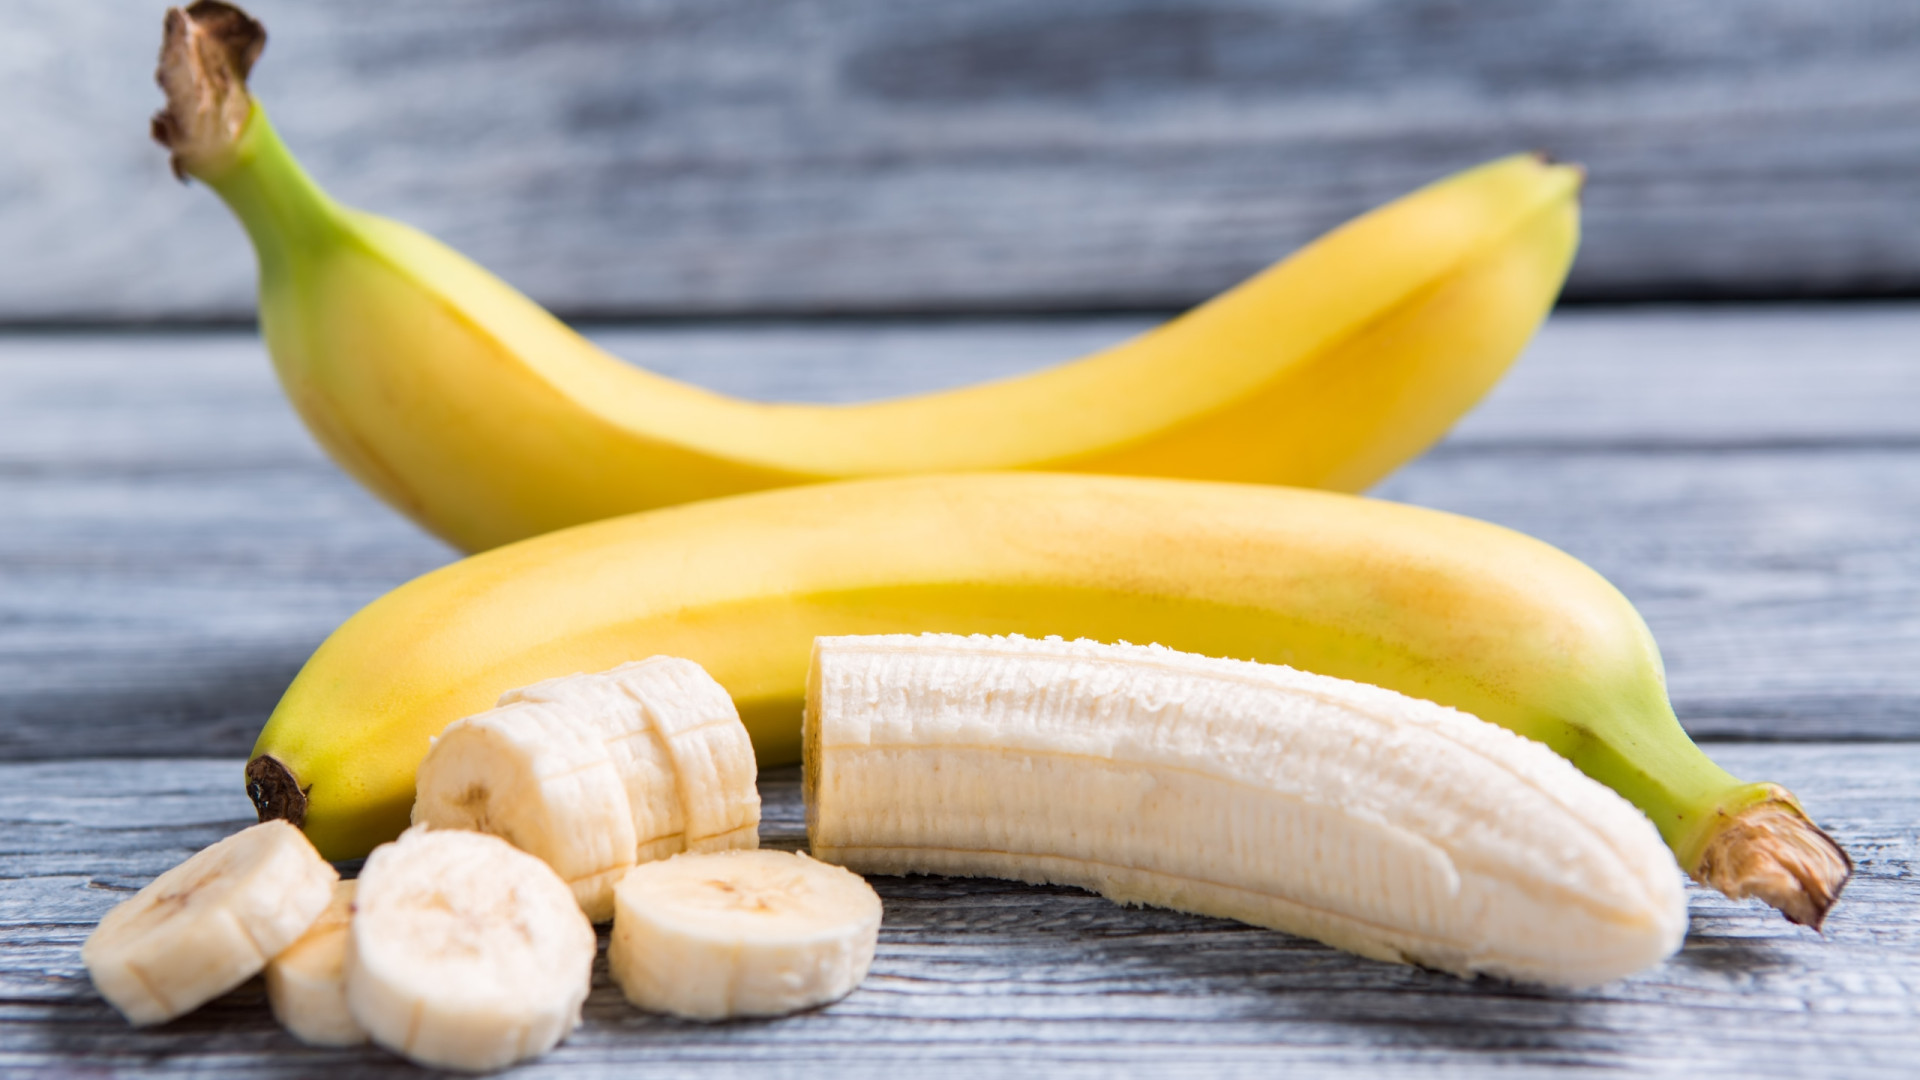 Sabe qual é a quantidade de açúcar que tem uma banana?